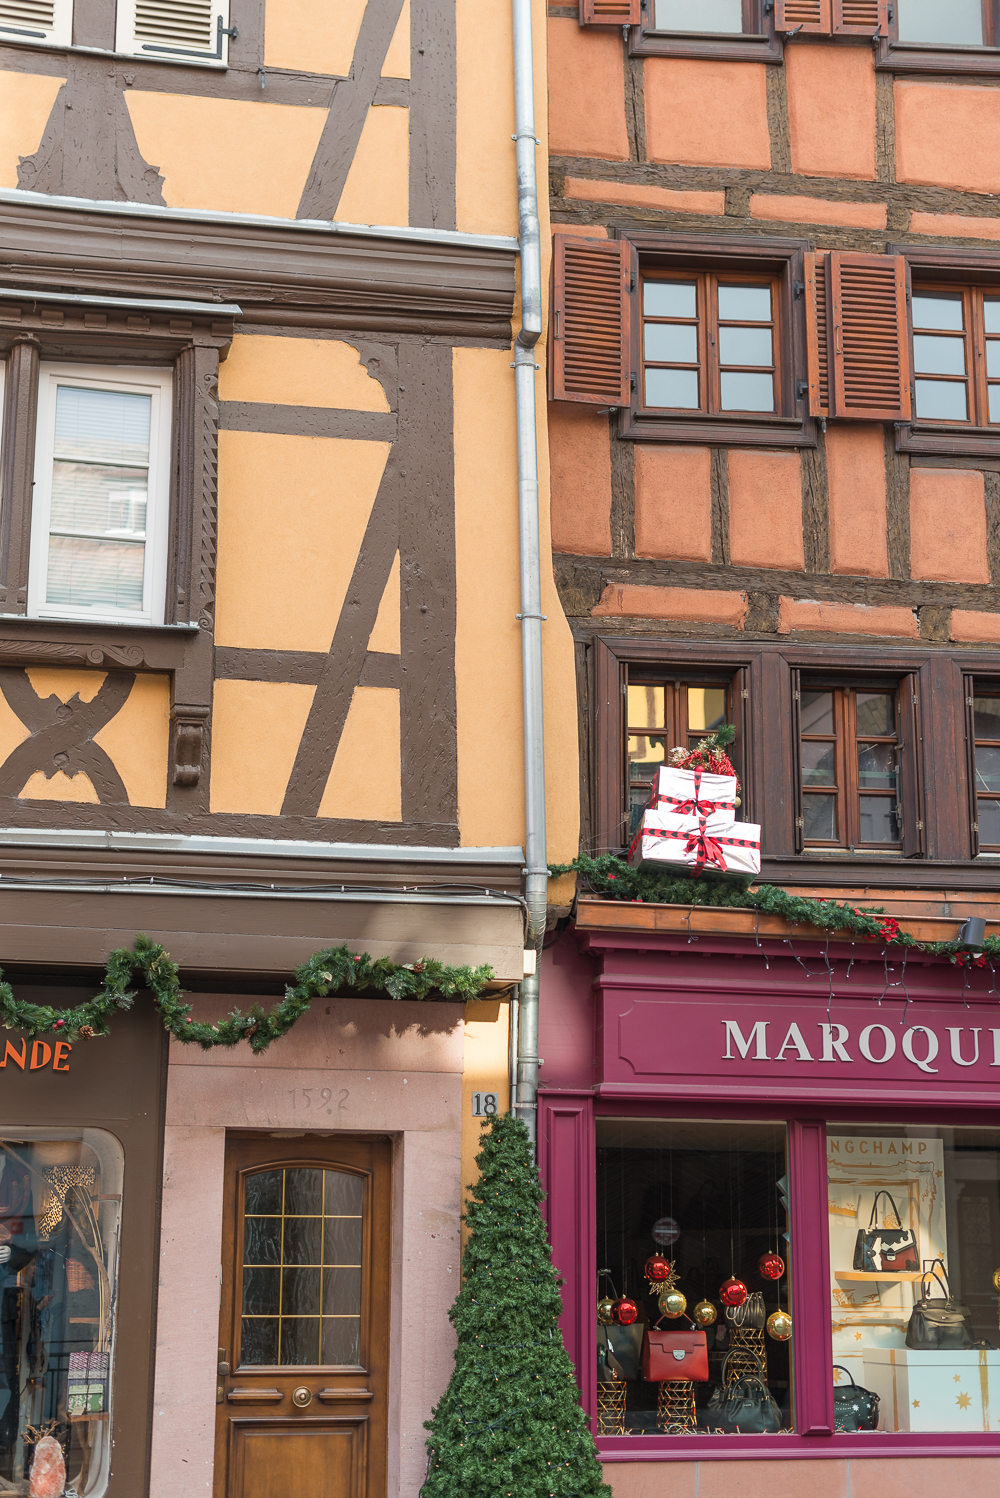 Besuch in Colmar, Weihnachtsmarkt Colmar, der schönste Weihnachtsmarkt, Elsass Frankreich, Reiseblog, andysparkles.de